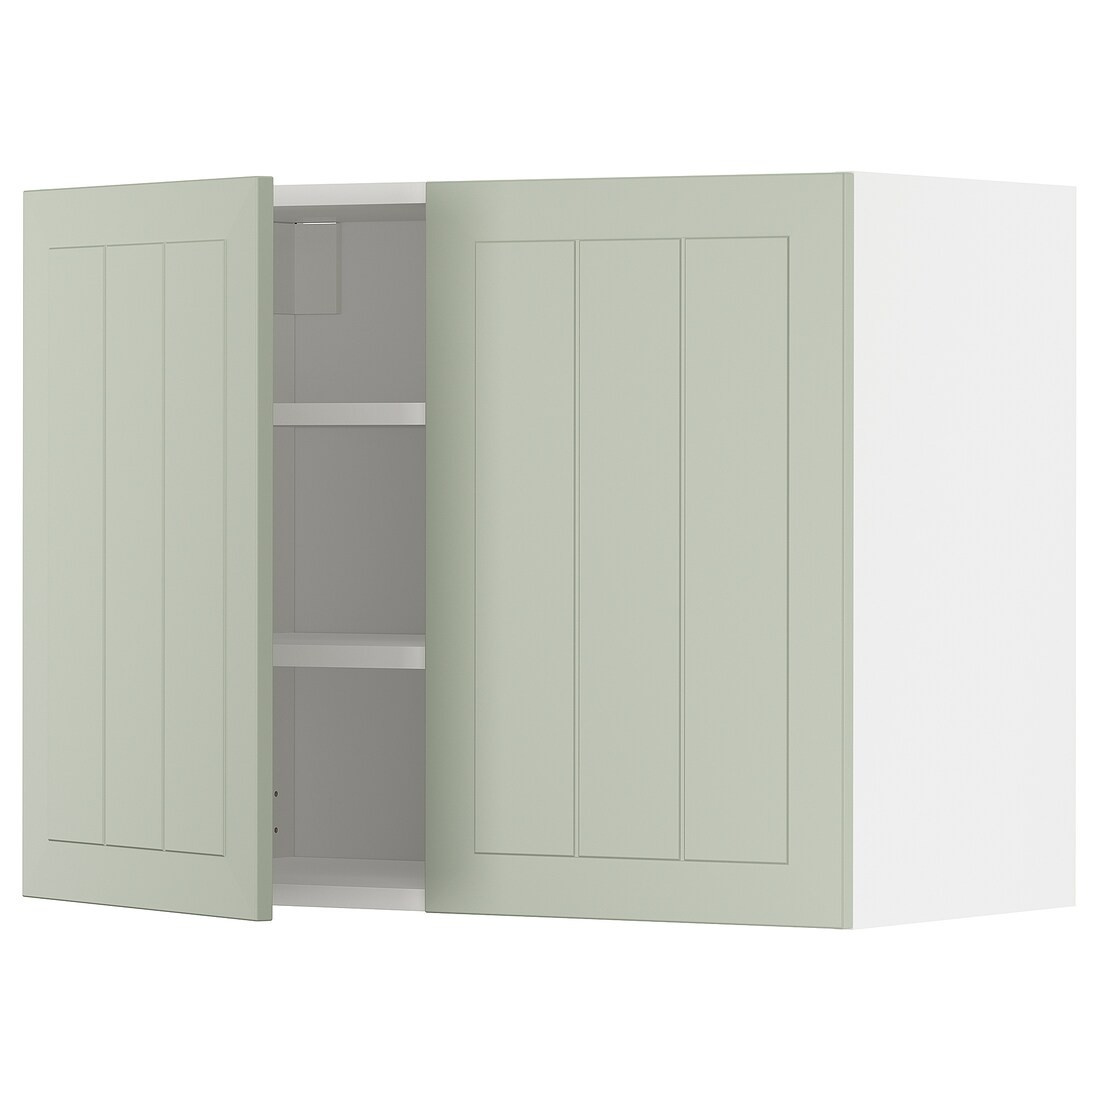 IKEA METOD МЕТОД Навесной шкаф с полками / 2 дверцы, белый / Stensund светло-зеленый, 80x60 см 99487506 | 994.875.06